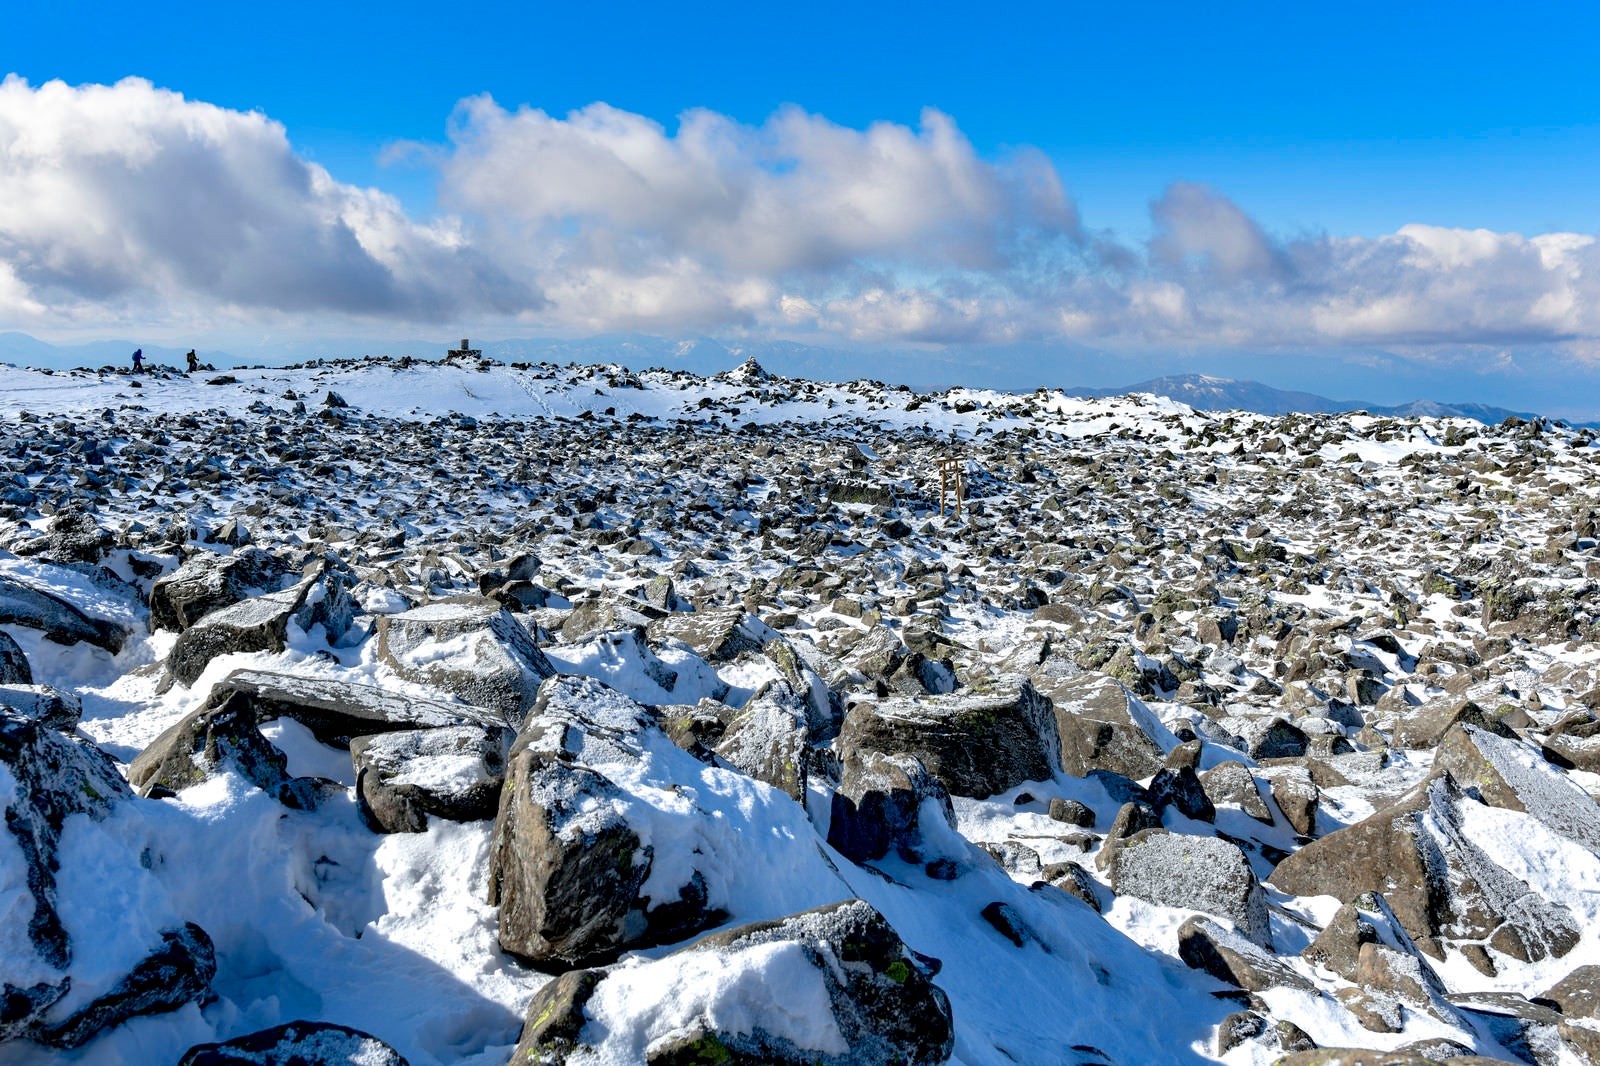 「岩が広がる蓼科山山頂の景色」の写真